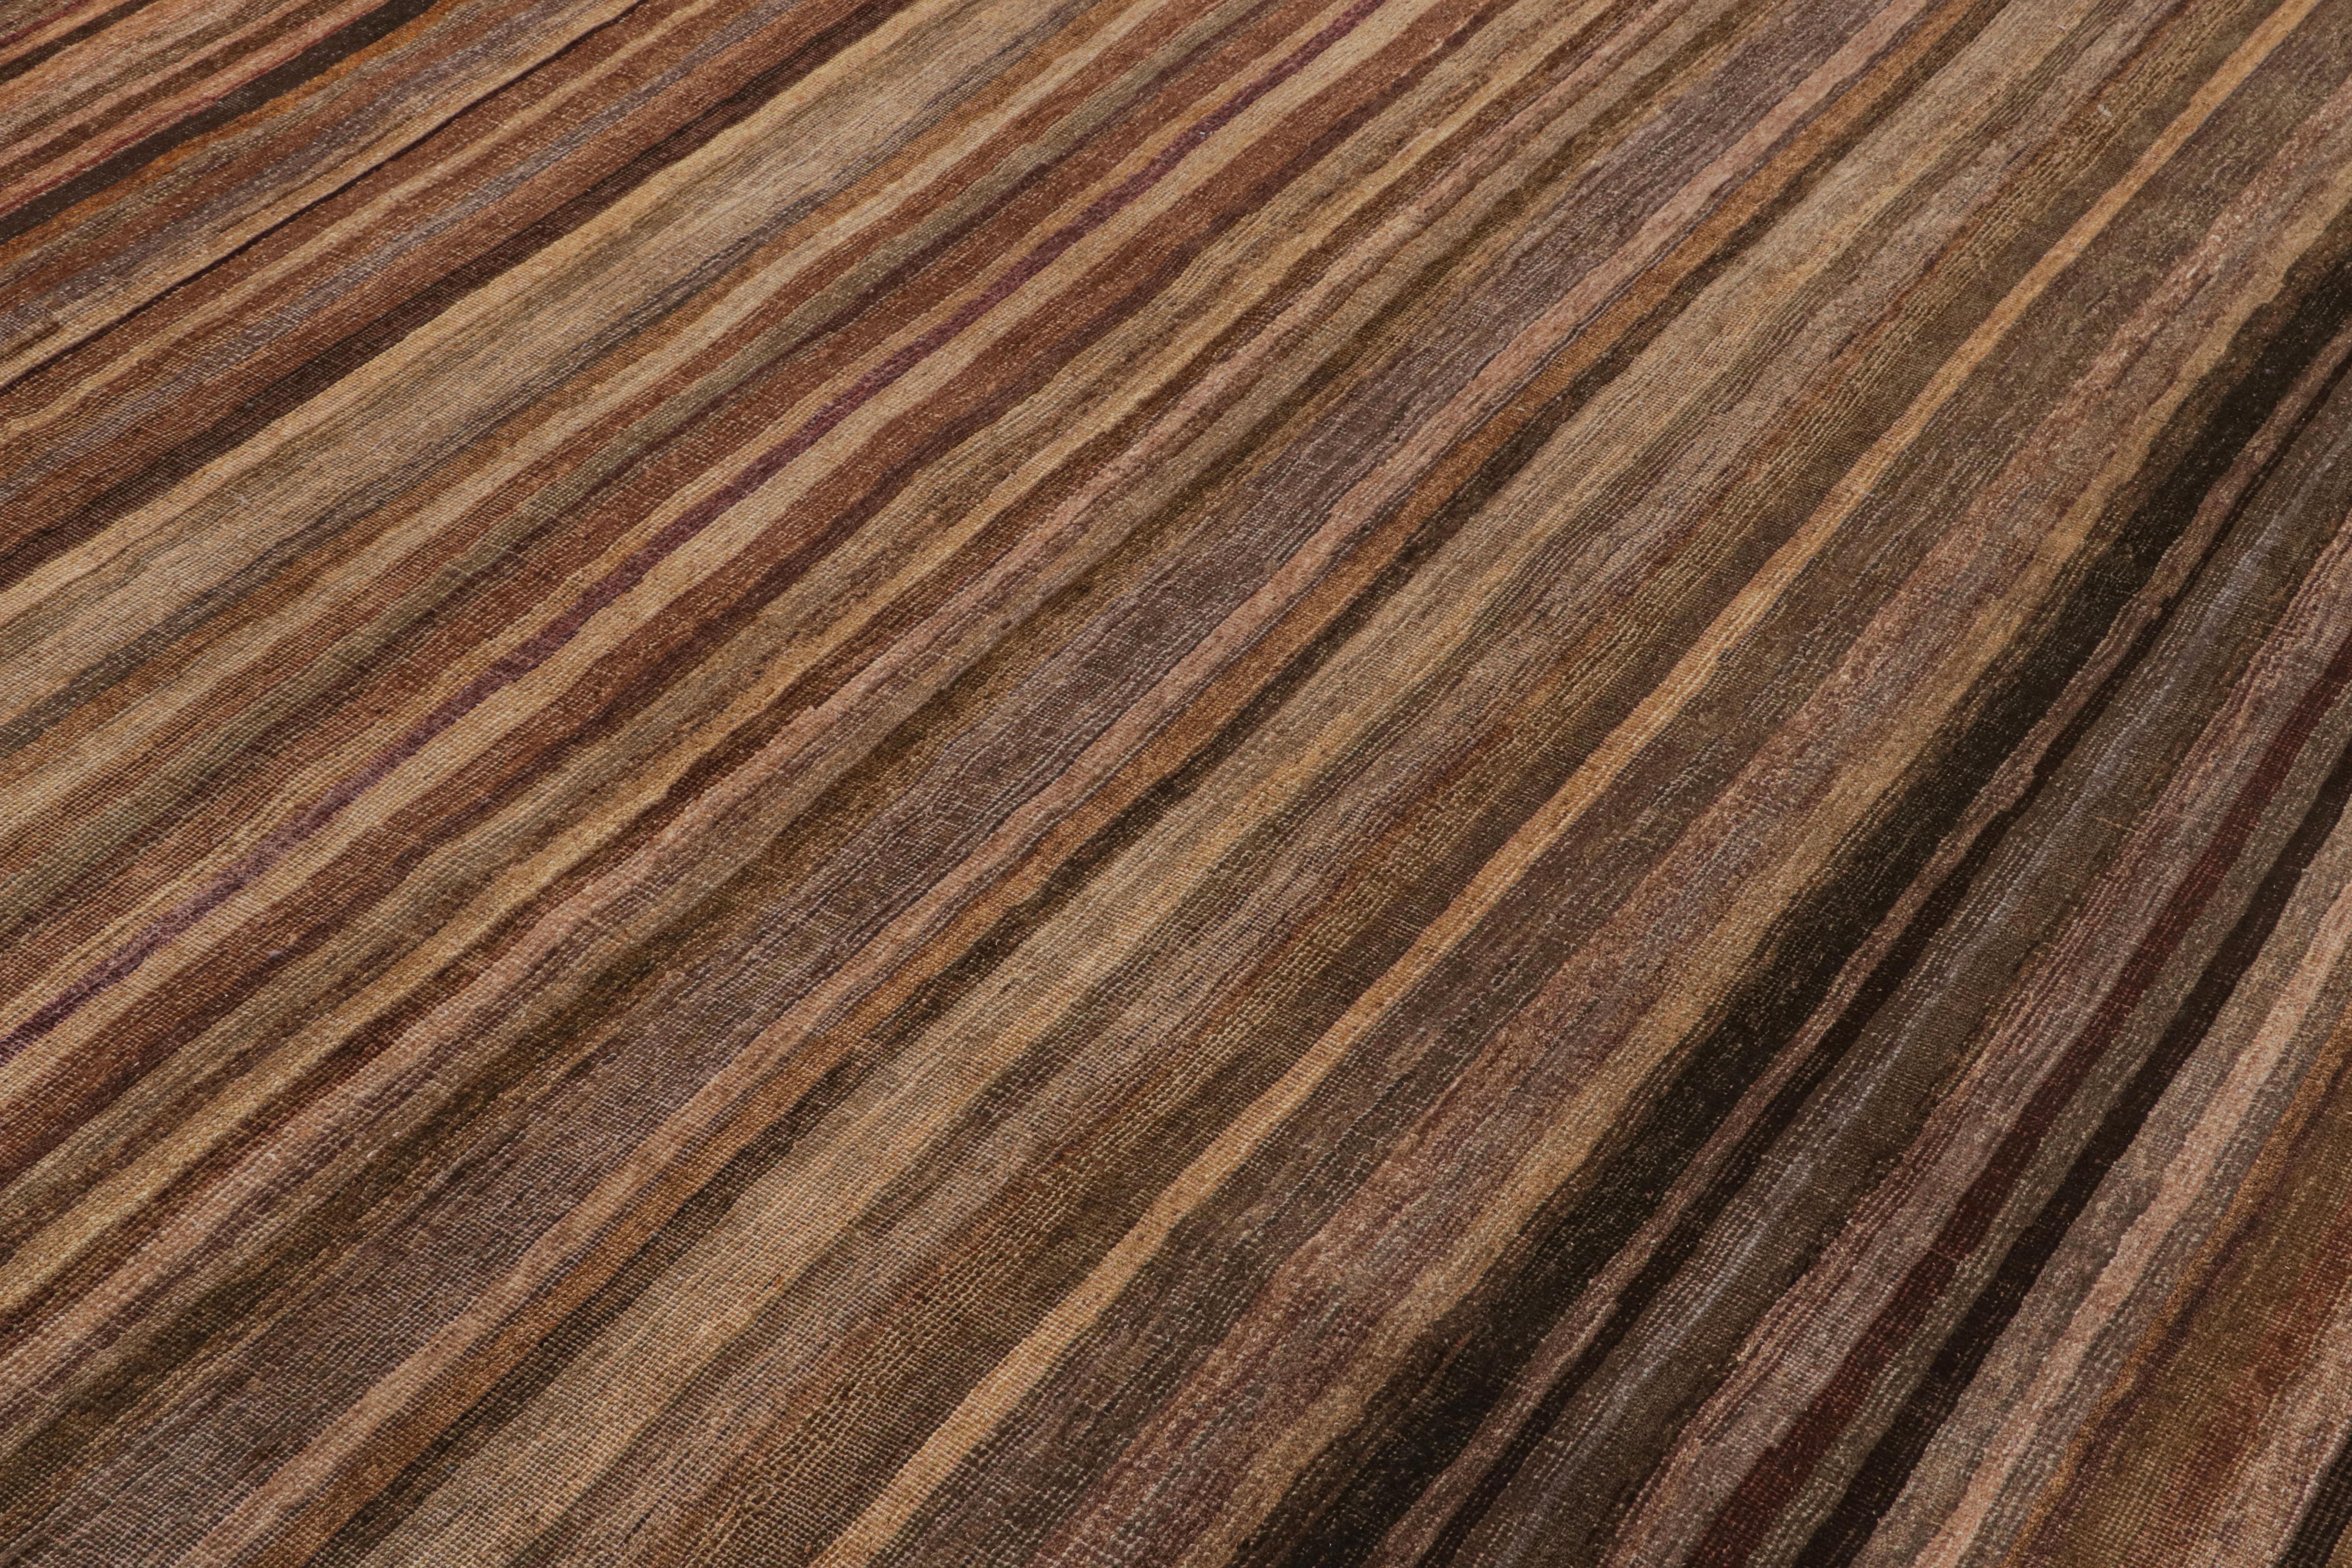 Ce tapis texturé 8x10 est un nouvel ajout à la Collection Texture of Color de Rug & Kilim.

Sur le Design :

Réalisé en laine nouée à la main, ce tapis reflète une nouvelle approche du thème de cette collection, notamment une teinture végétale comme